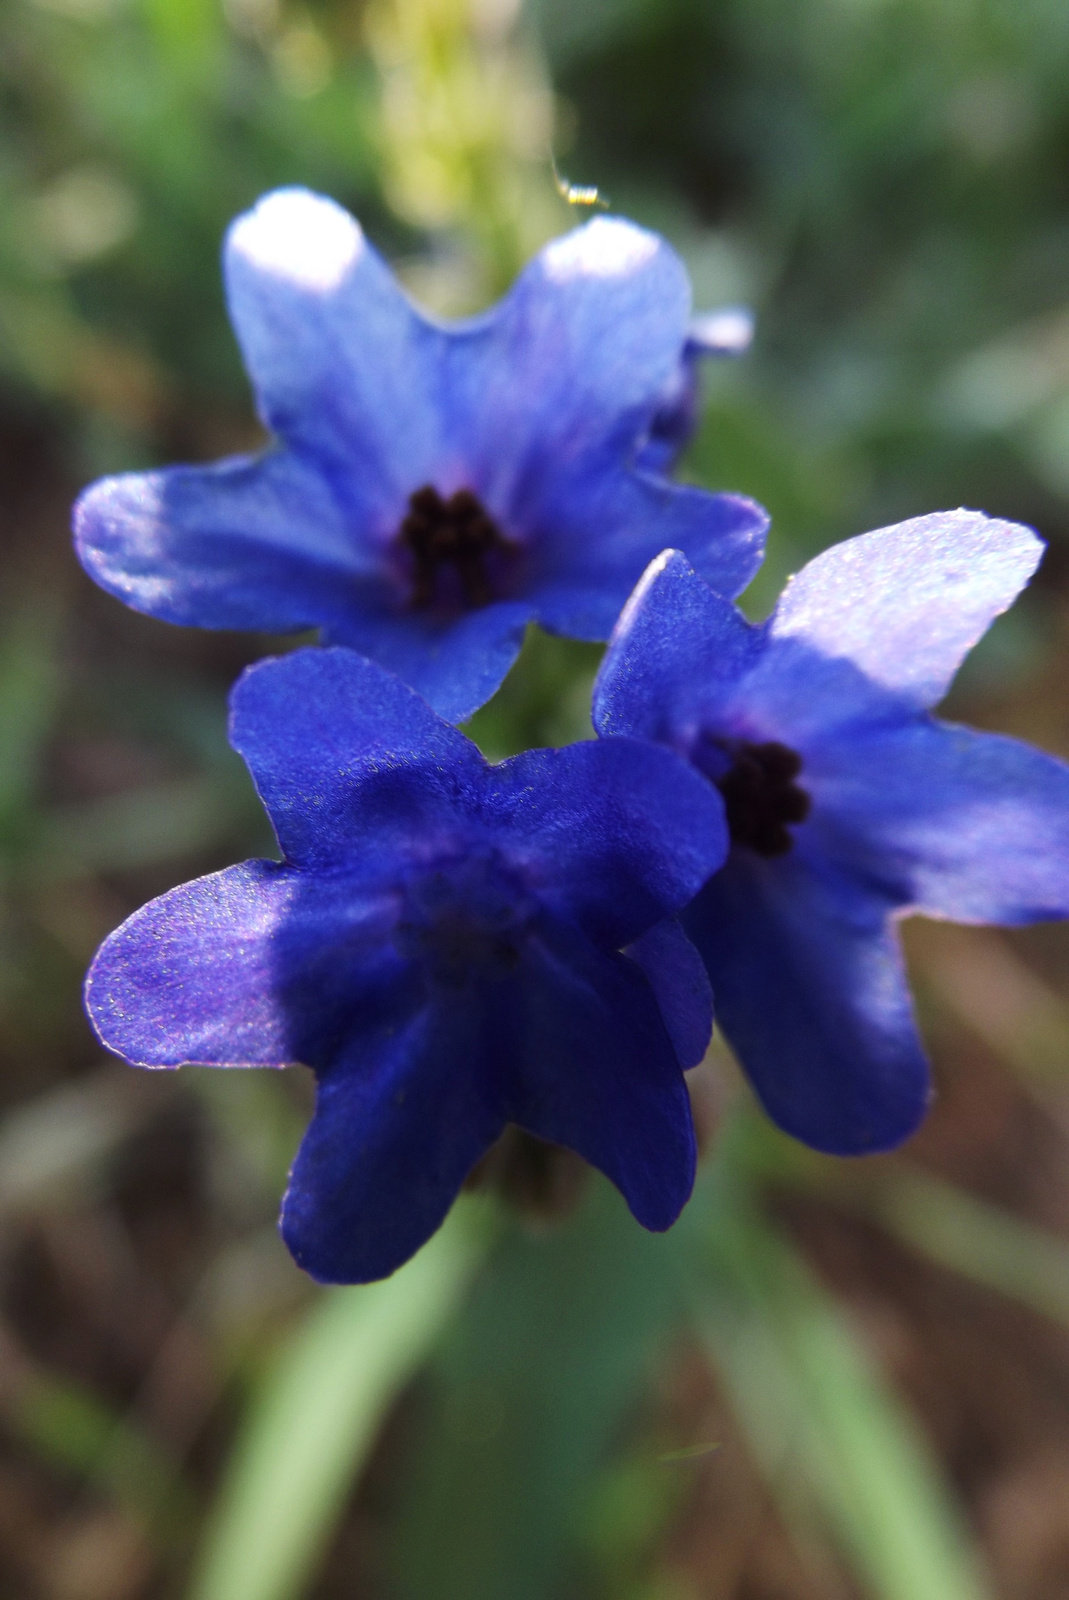 3 kicsi kék virág